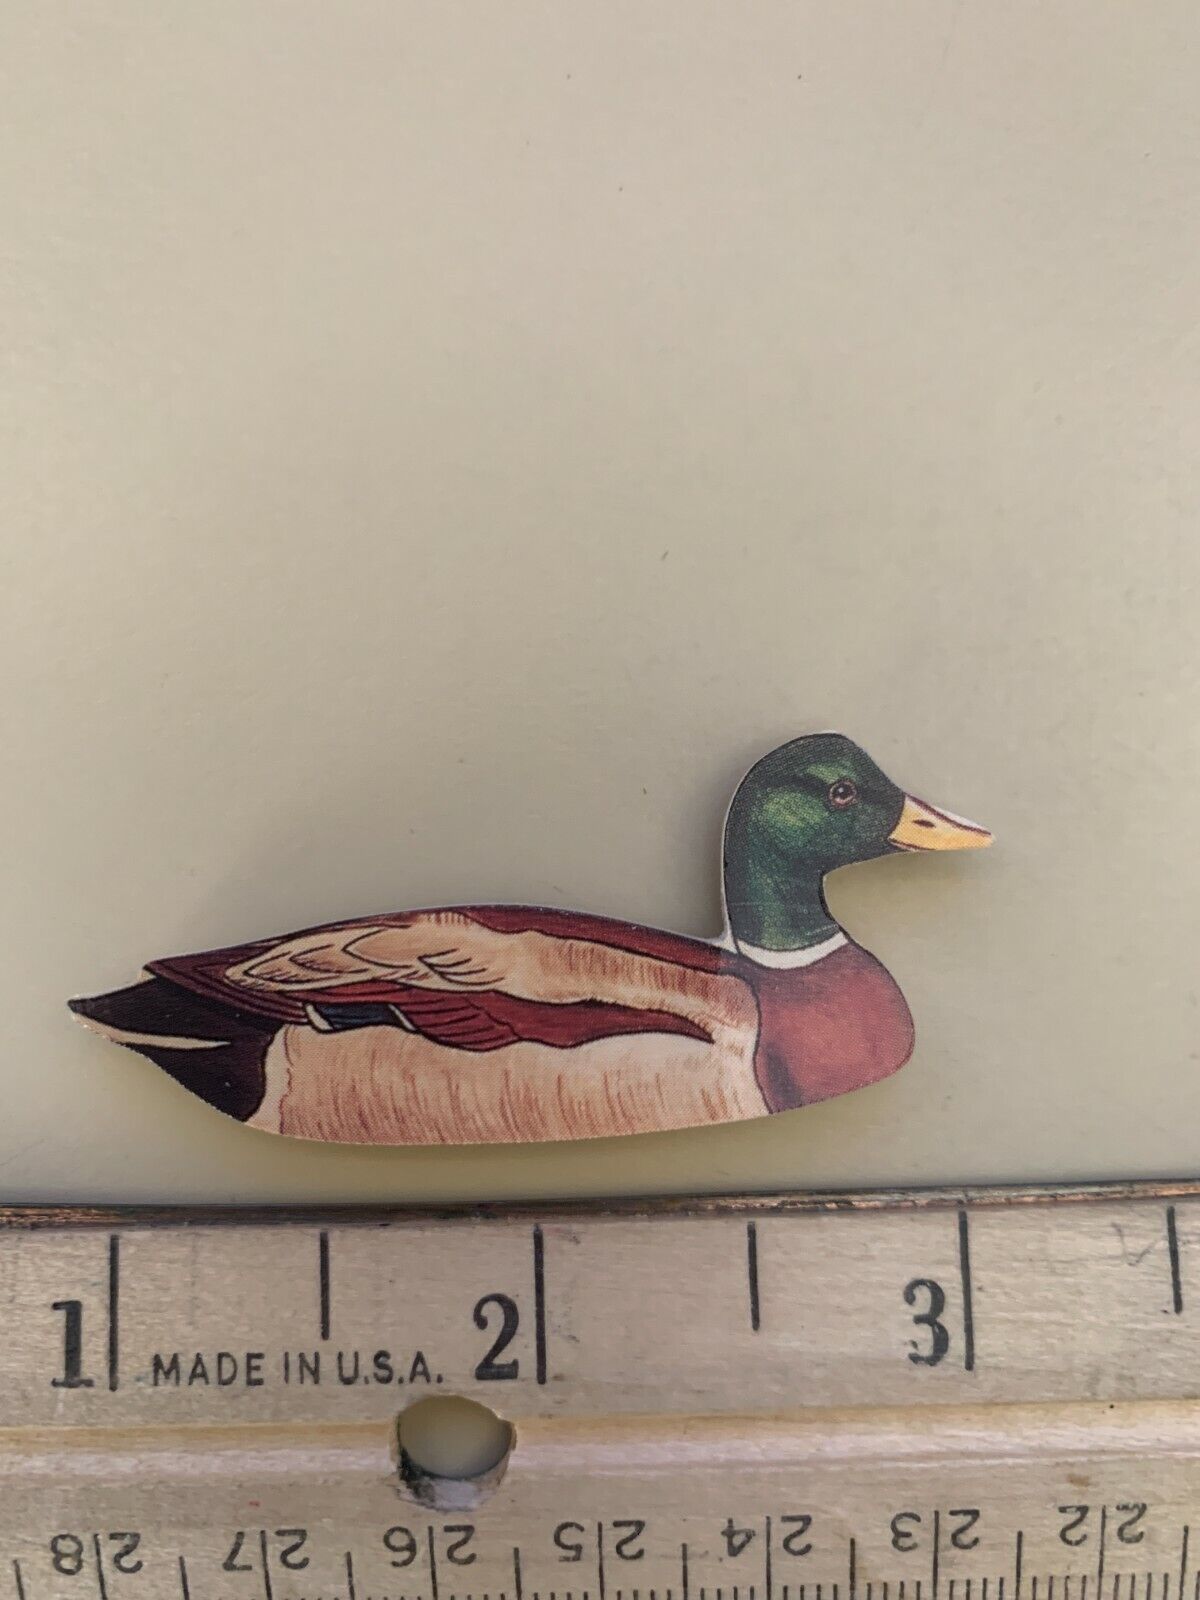 painted Painted Wood duck Mallard-Lark Rise Designs England-Vintage | eBay